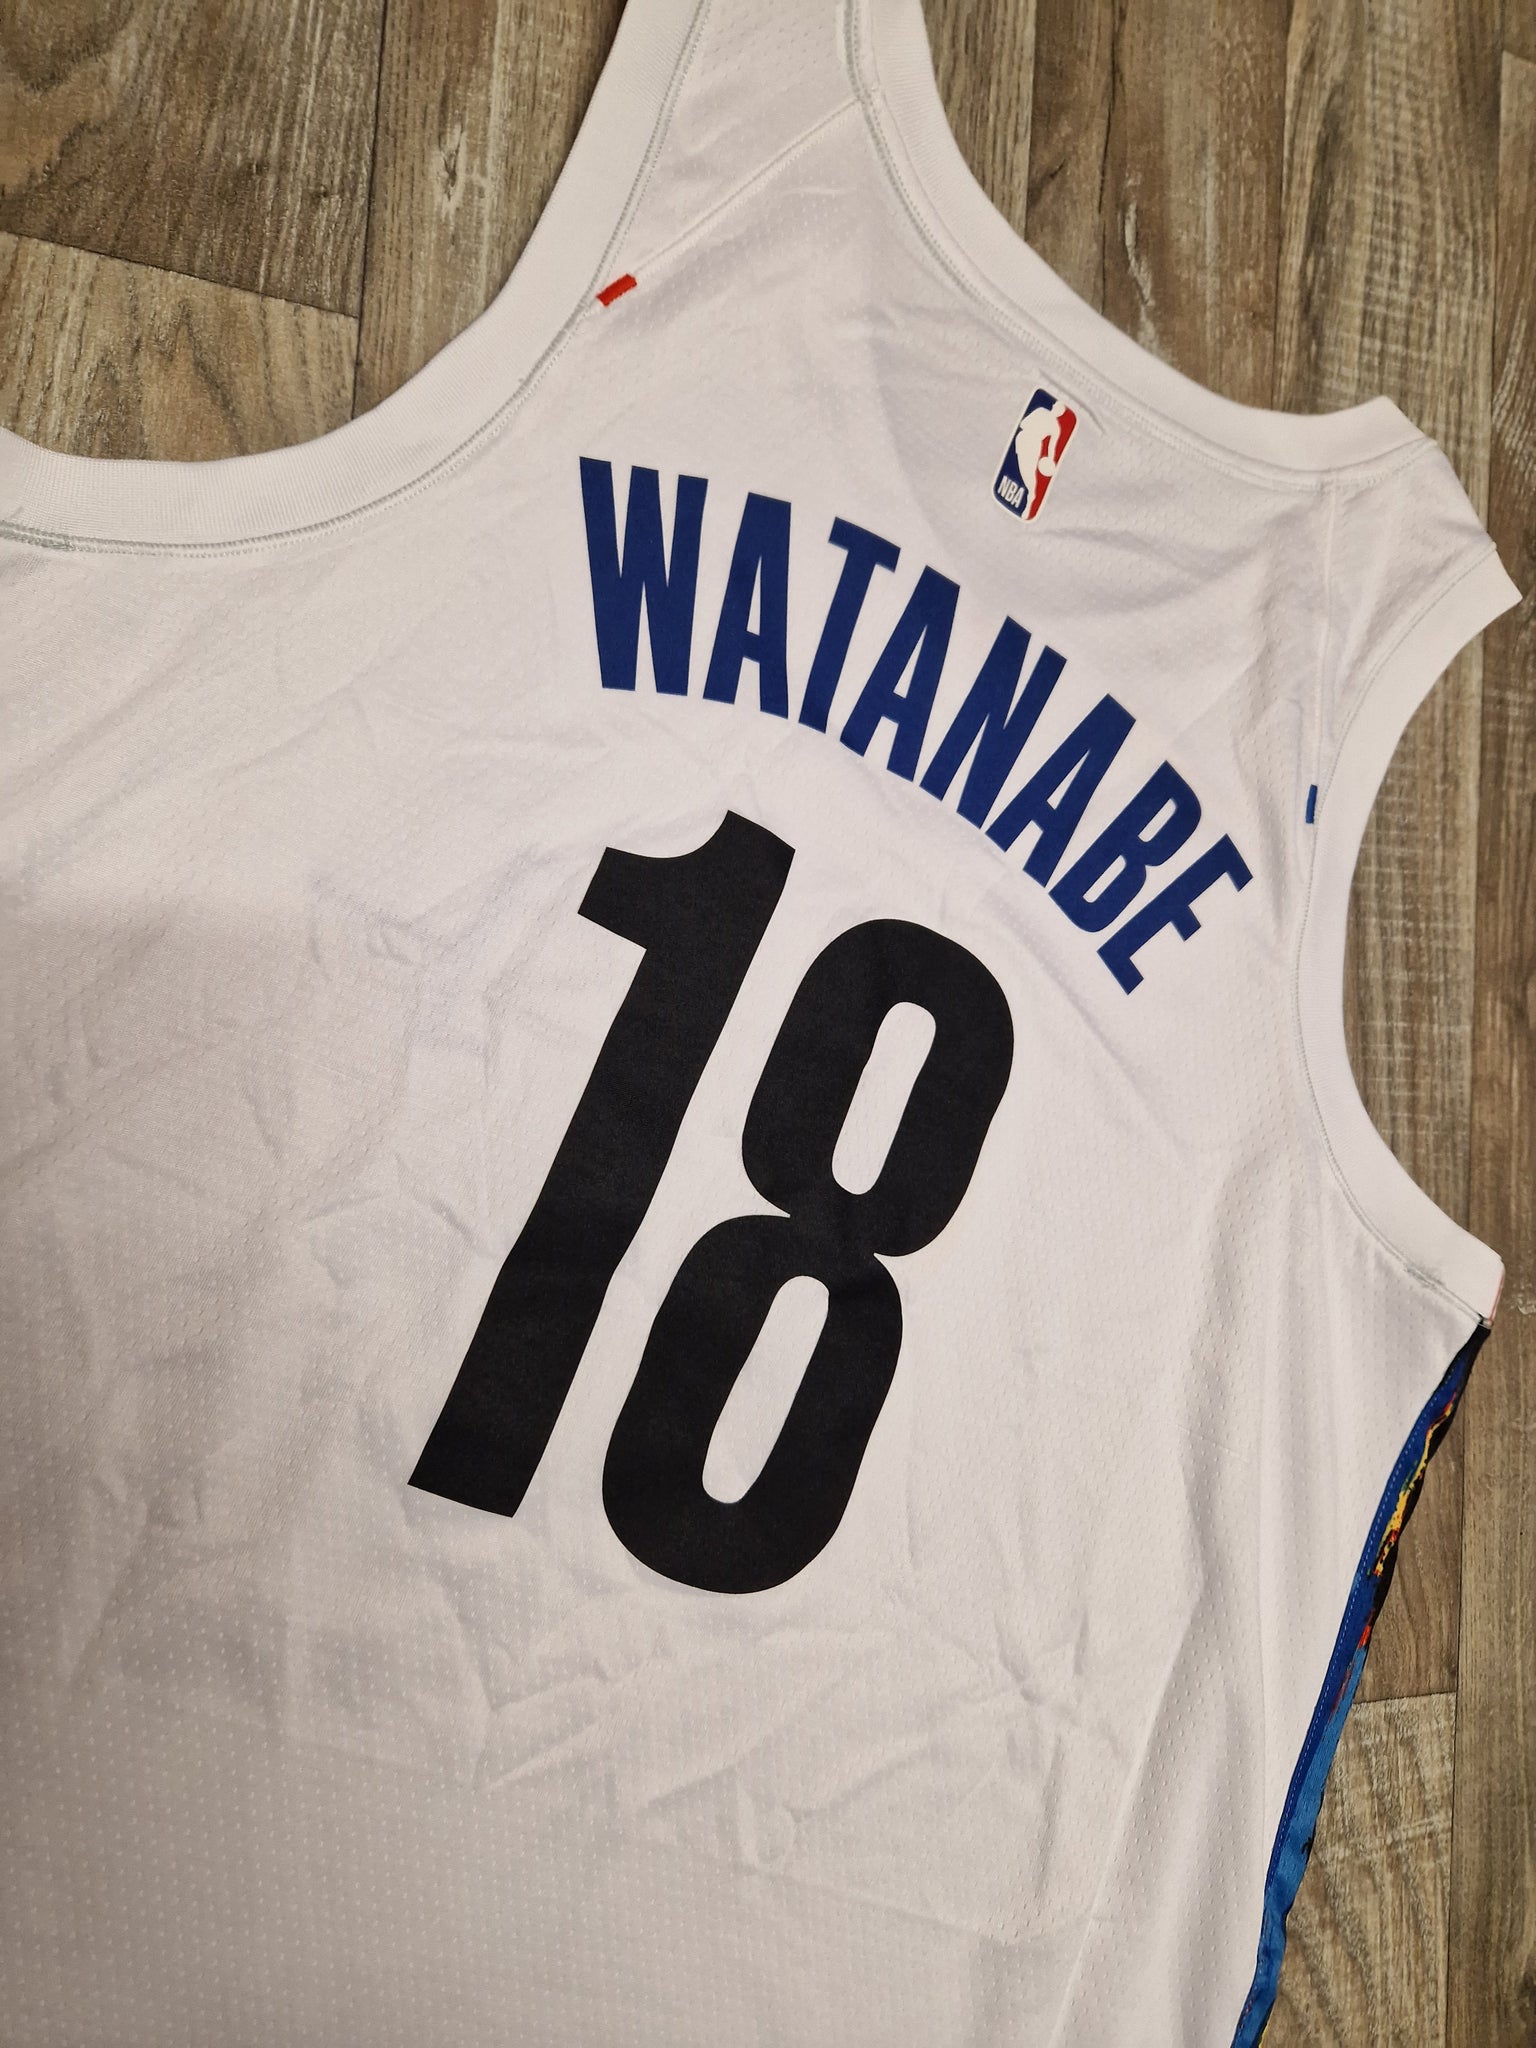 yuta watanabe nets jersey